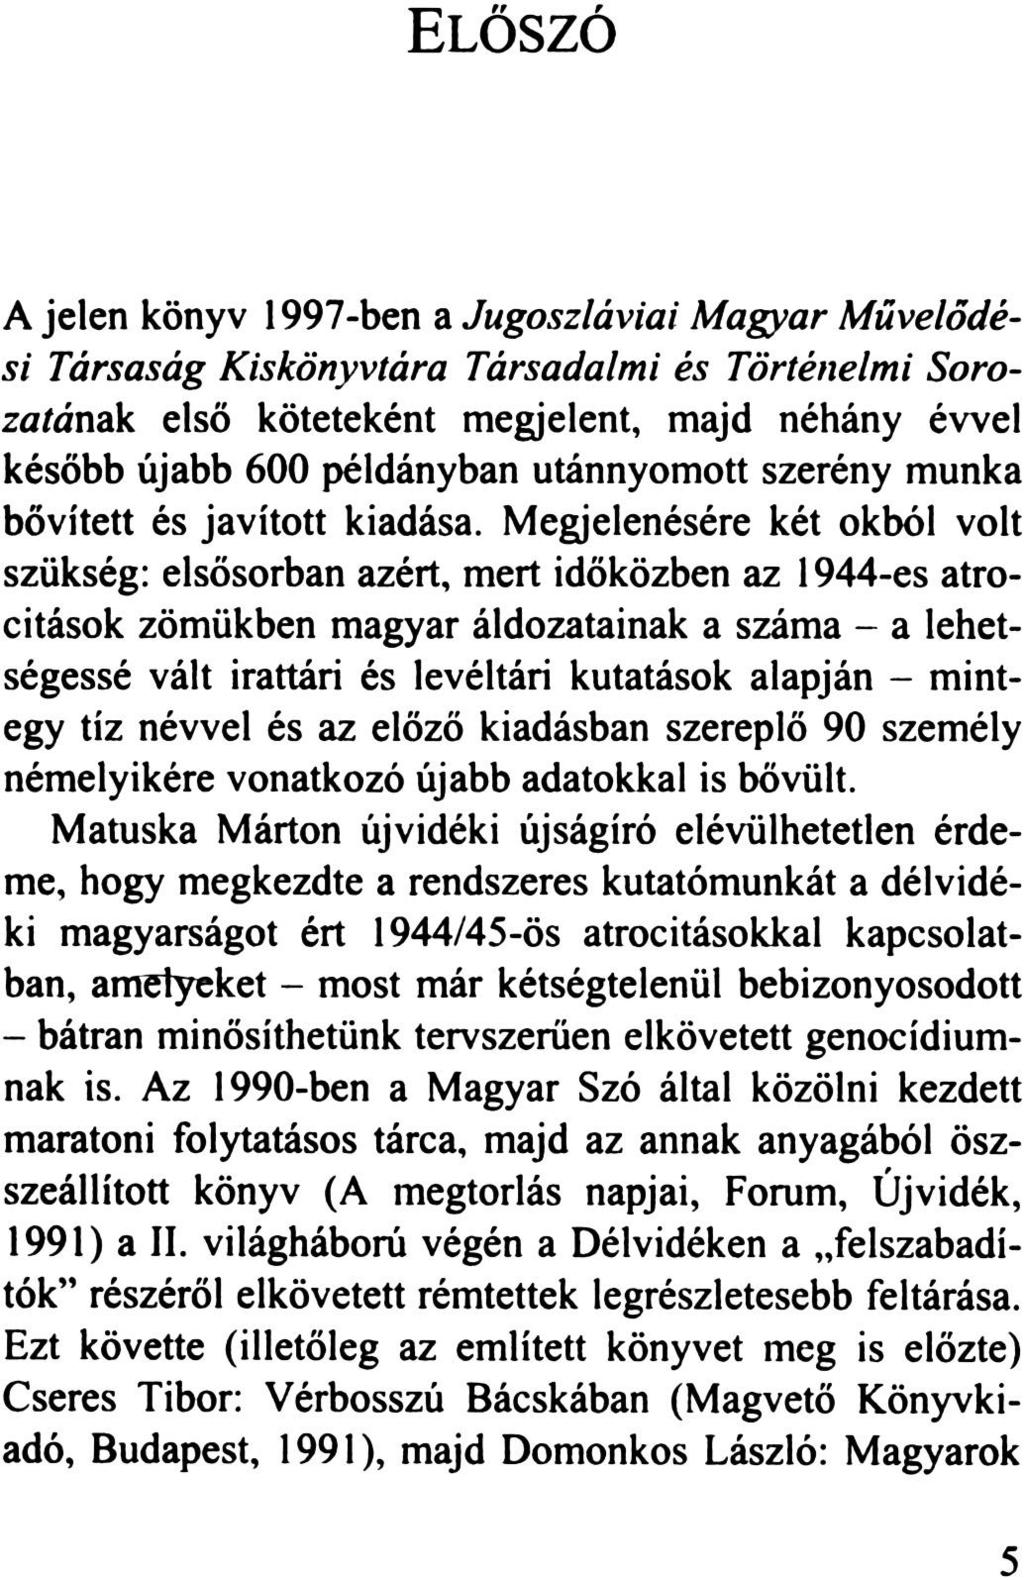 ELŐSZÓ A jelen könyv 1997-ben a Jugoszláviai Magyar Művelődési Társaság Kiskönyvtára Társadalmi és Történelmi Sorozatának első köteteként megjelent, majd néhány évvel később újabb 600 példányban